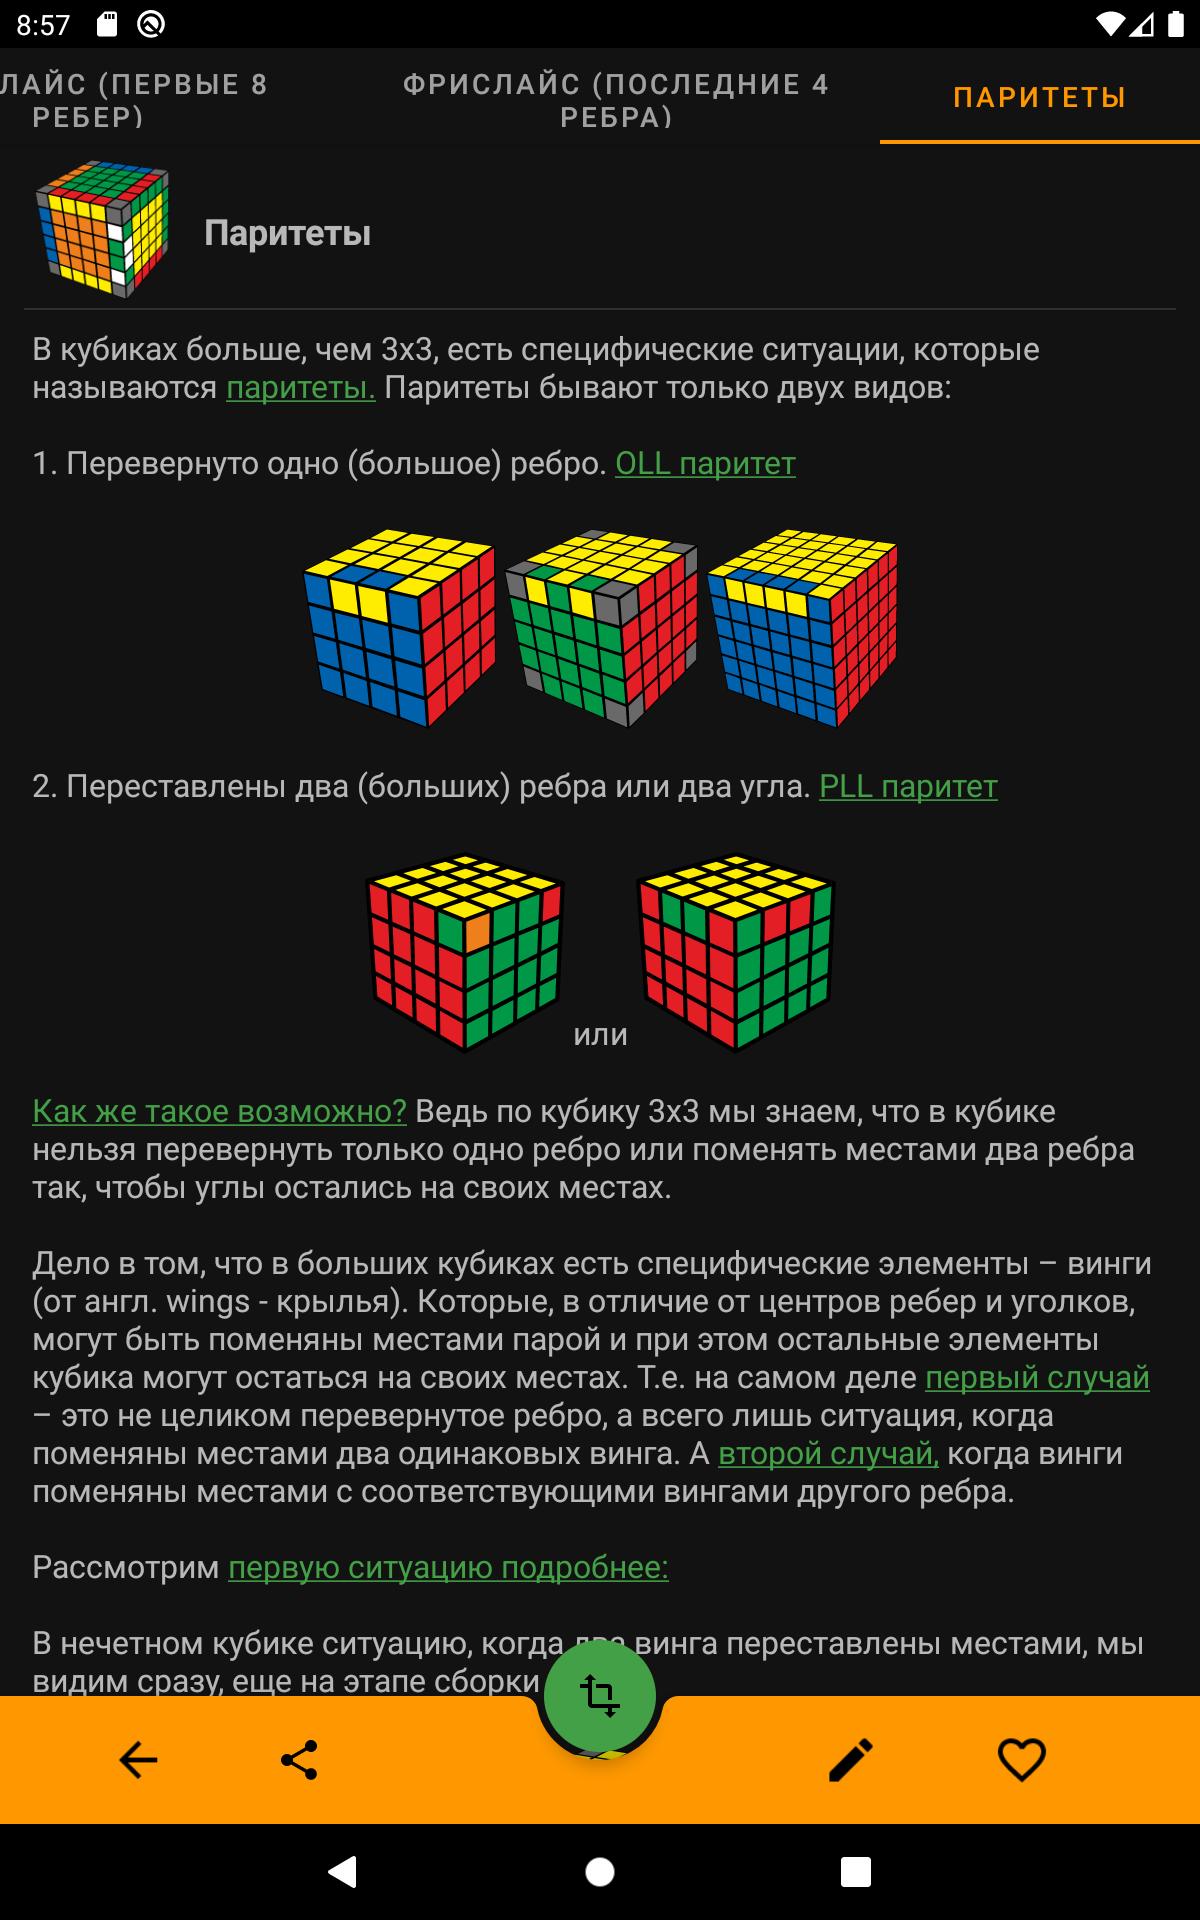 Программа для сборки кубика. Формула кубика Рубика. Схема по сборке кубика Рубика. Приложение кубик рубик. Приложение для сборки кубика Рубика.